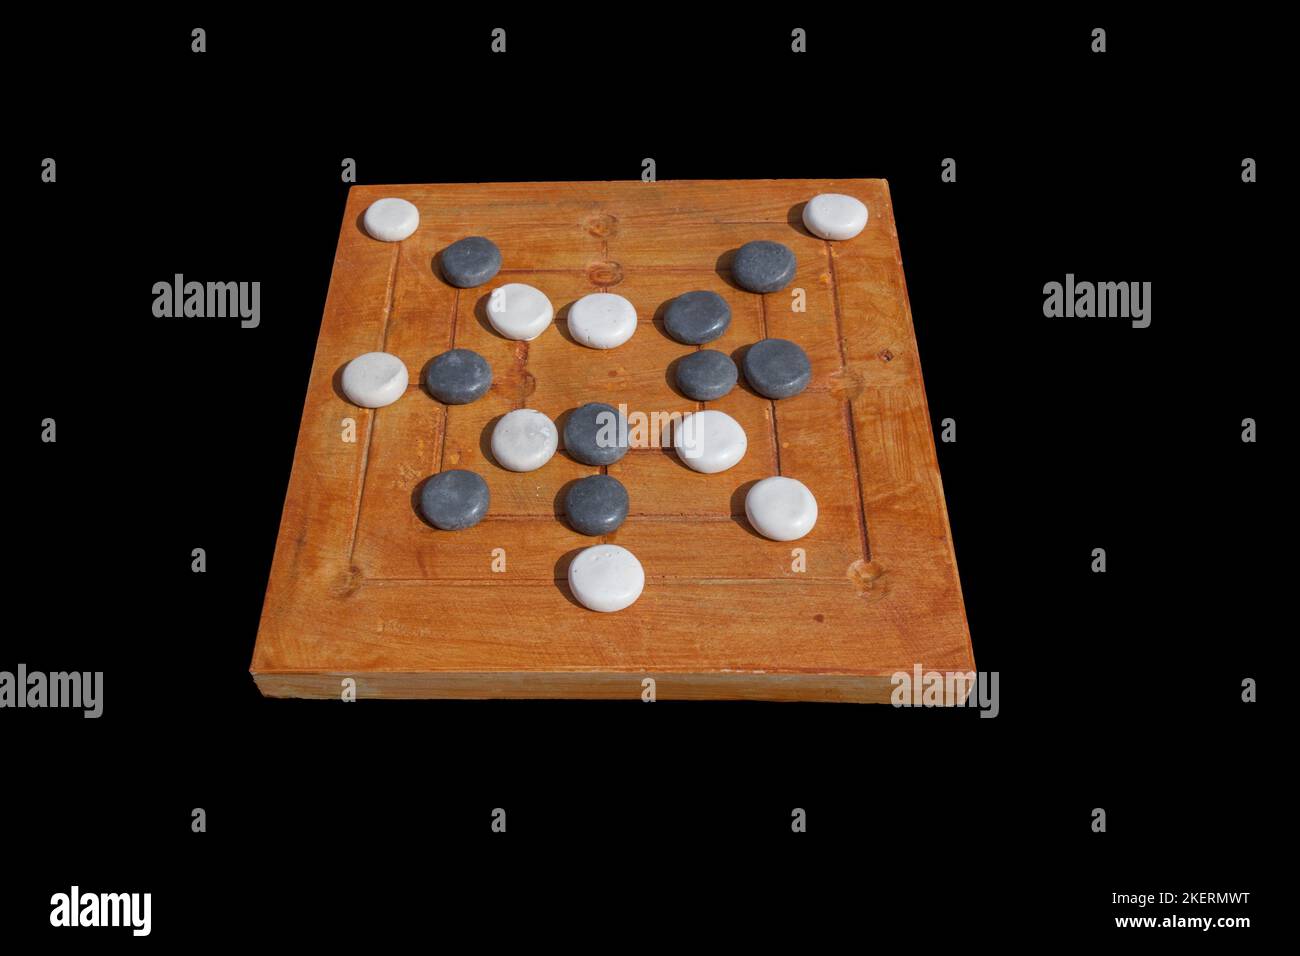 Rekonstruktion des römischen Brettspiels Nine mens morris oder Mill Game. Private Freizeitaktivitäten der alten römer. Stockfoto